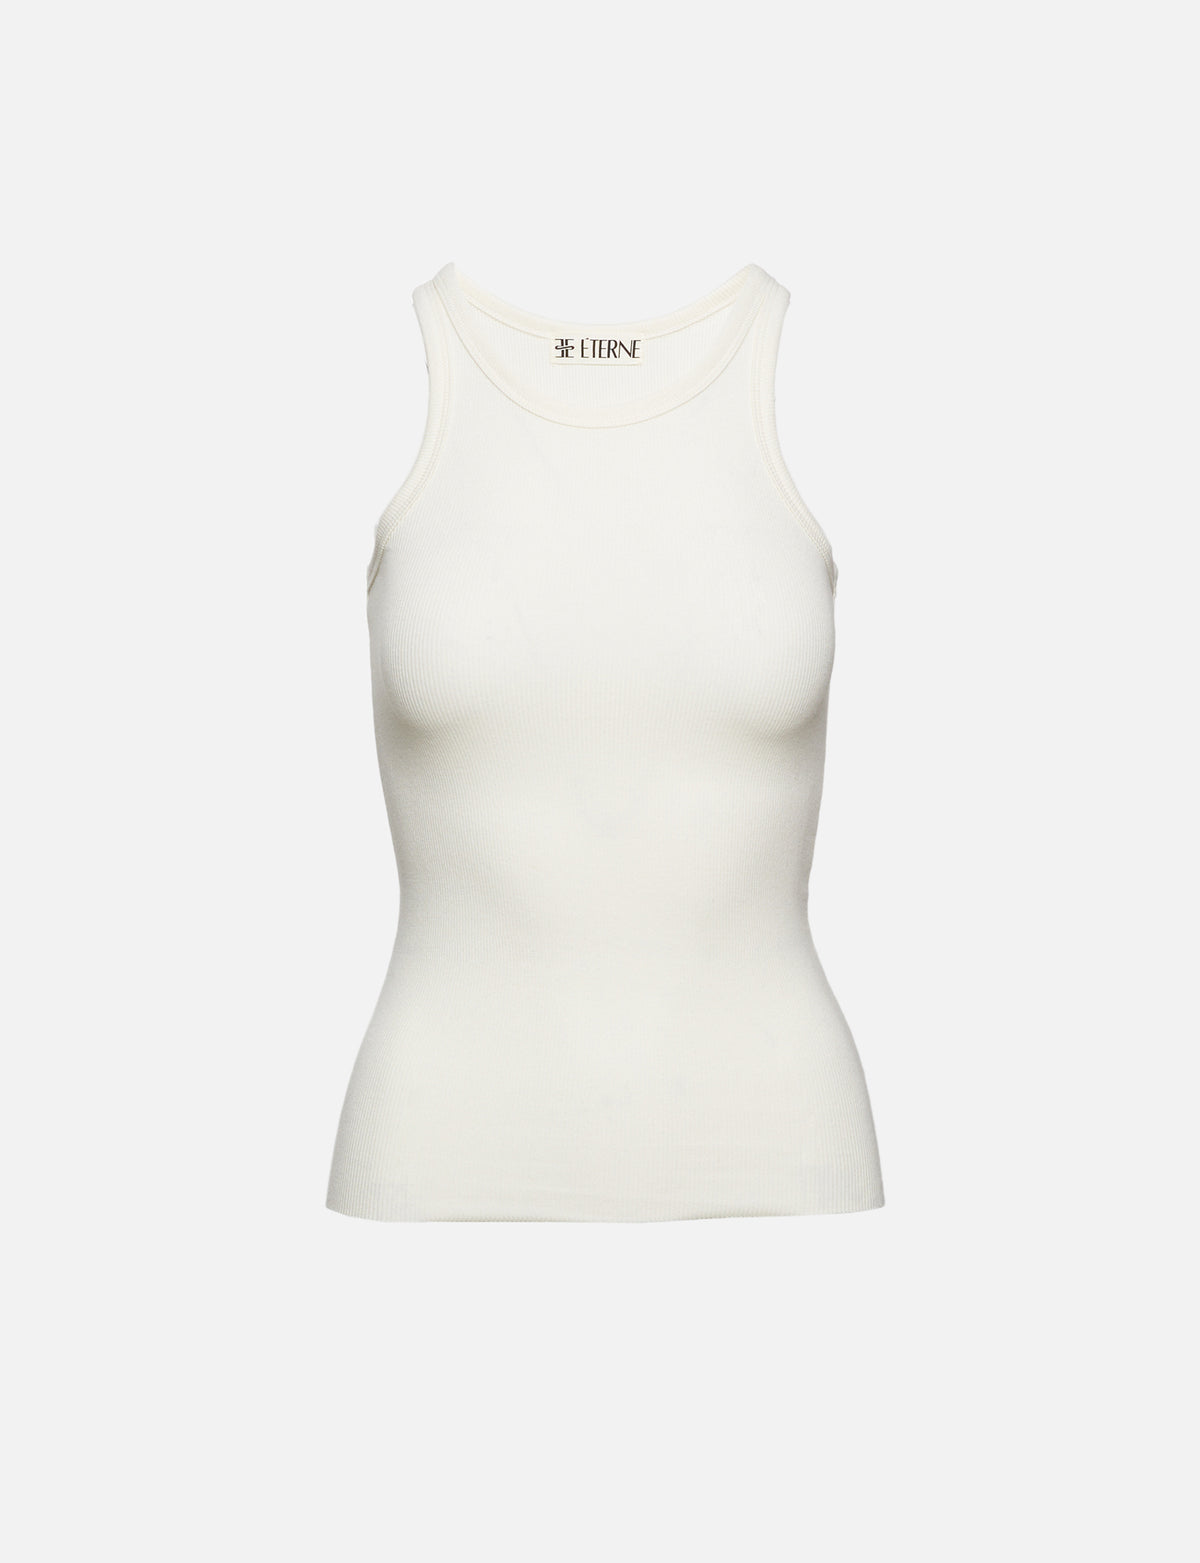 Tek Gear Women's White Round Neck Pullover Activewear Tank Top Size Sm –  Shop Thrift World